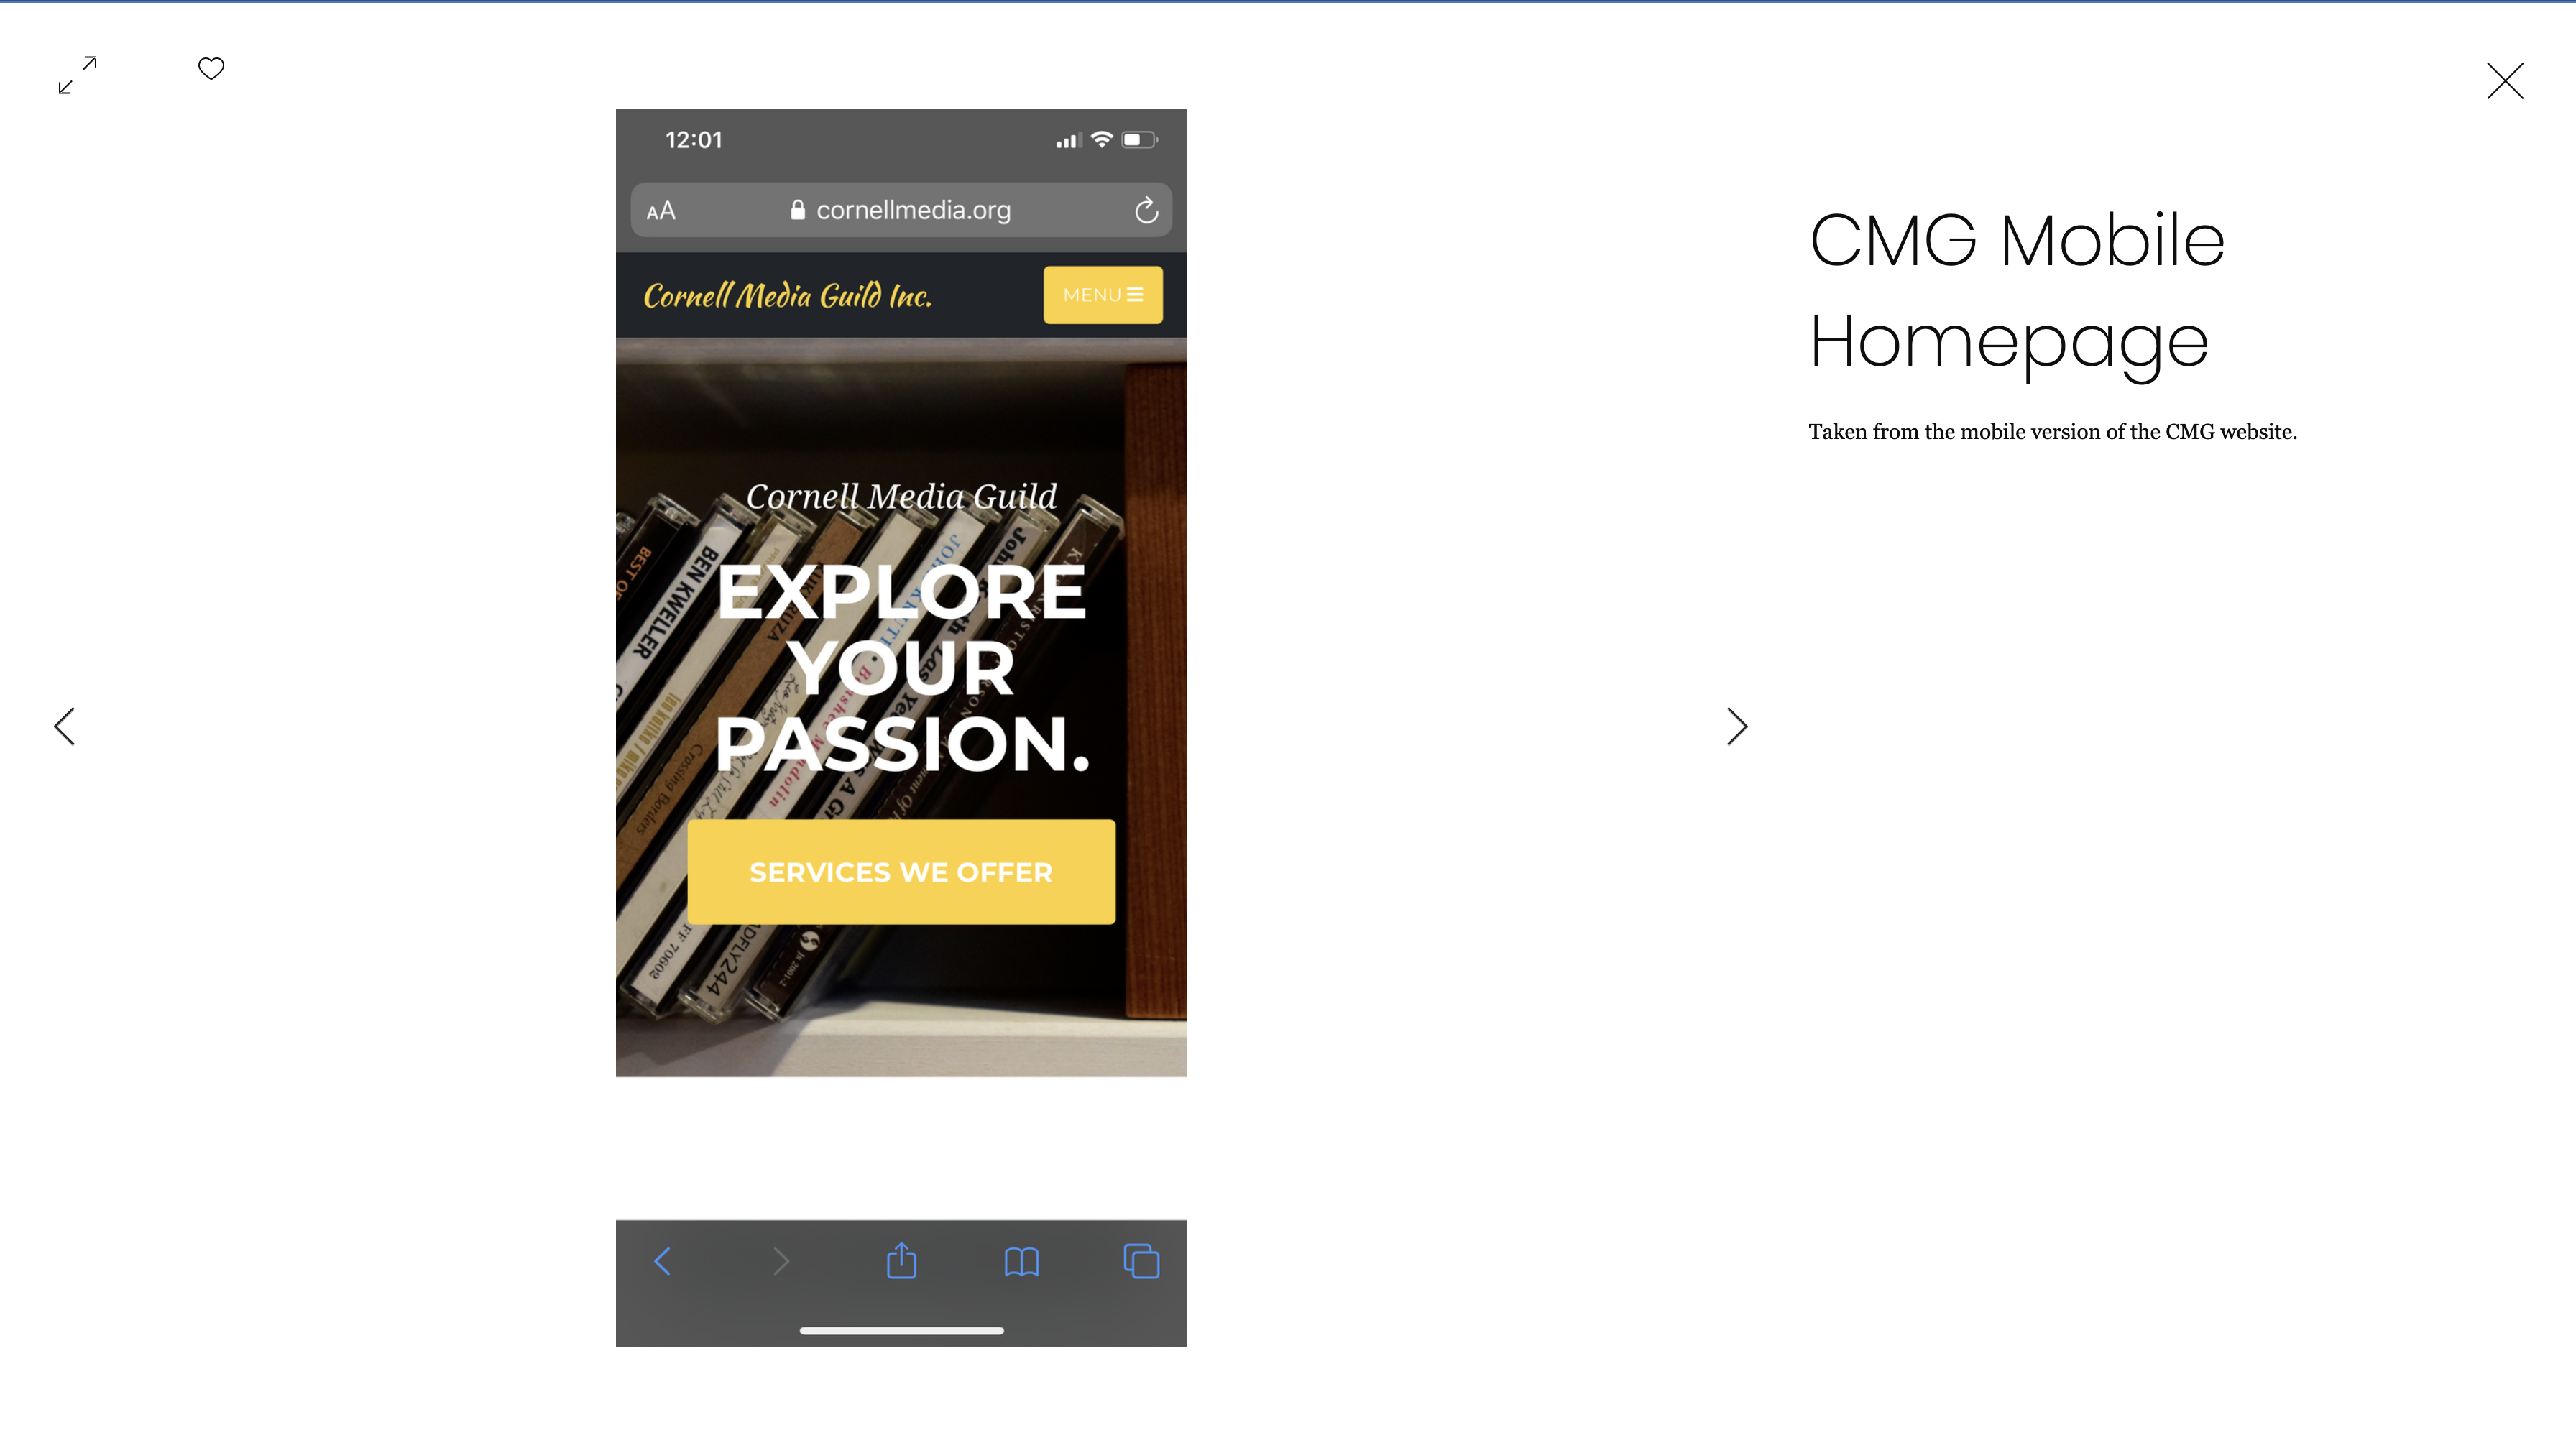 CMG Webpage 2020